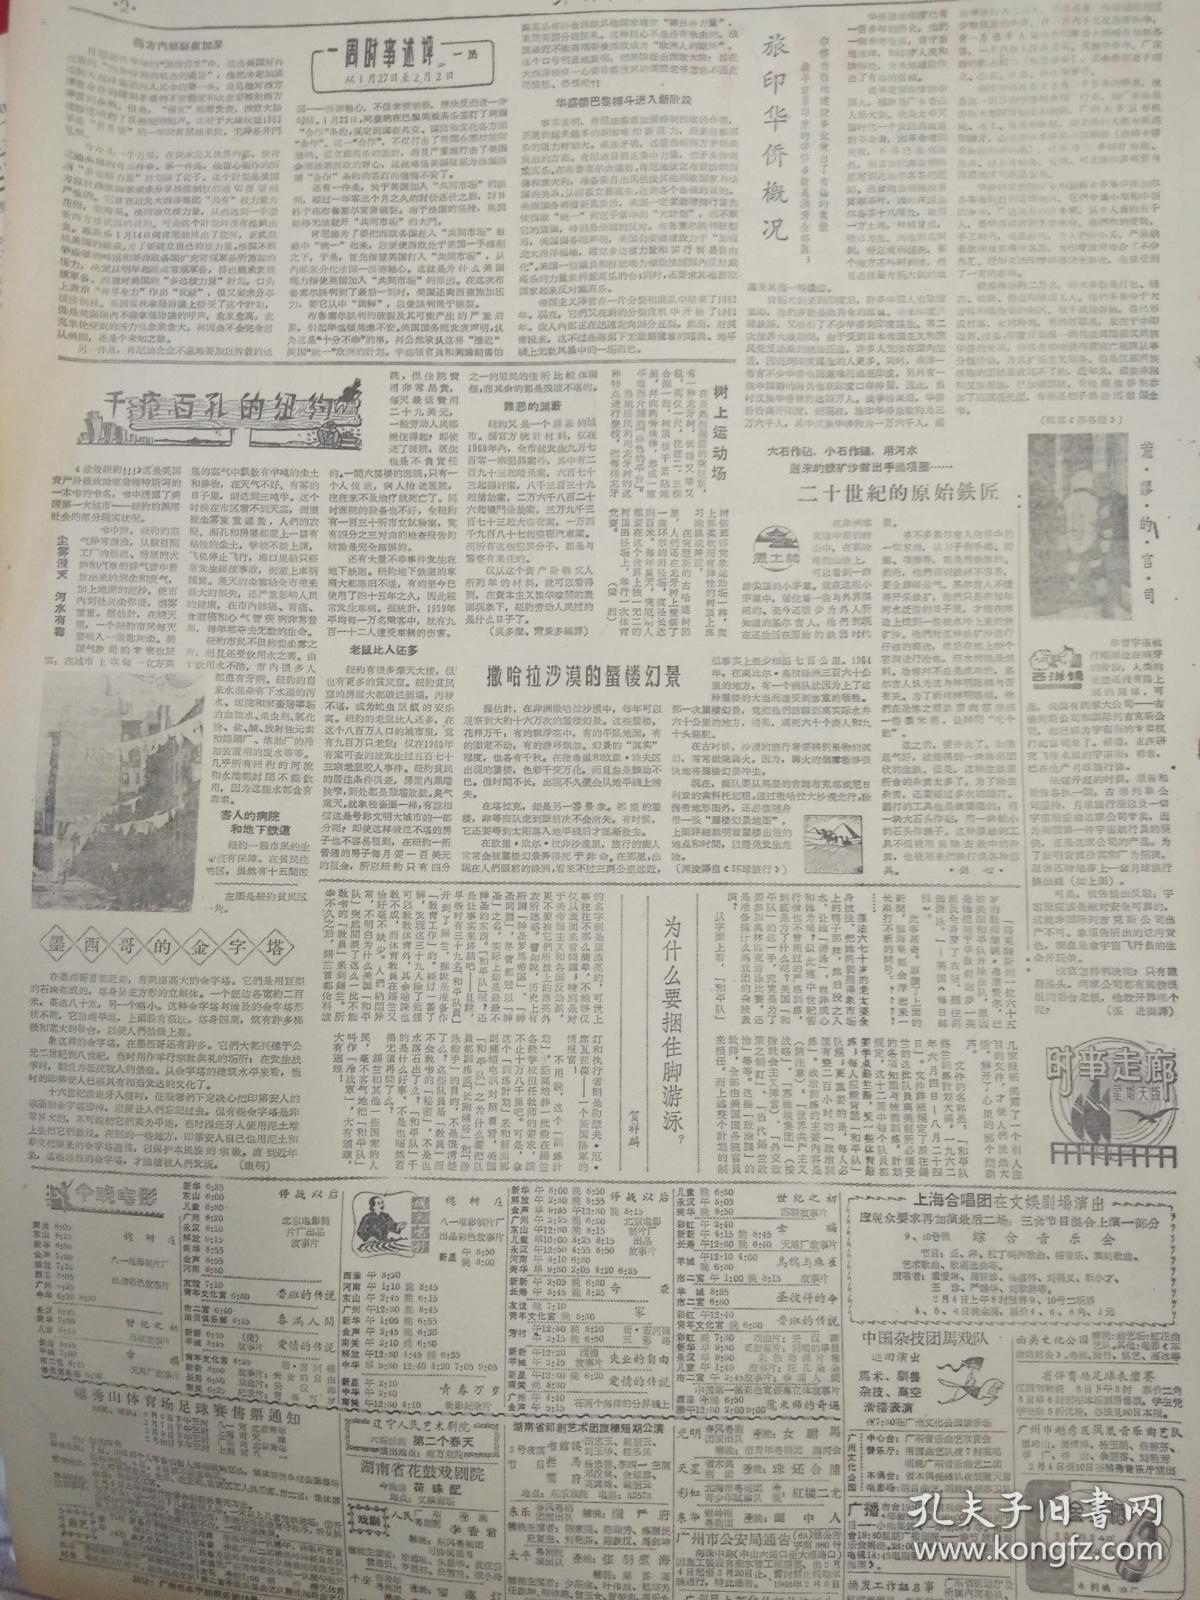 老报纸羊城晚报 1963年2月3日 （4开二版）；
发扬“二七”精神；
千疮百孔的纽约